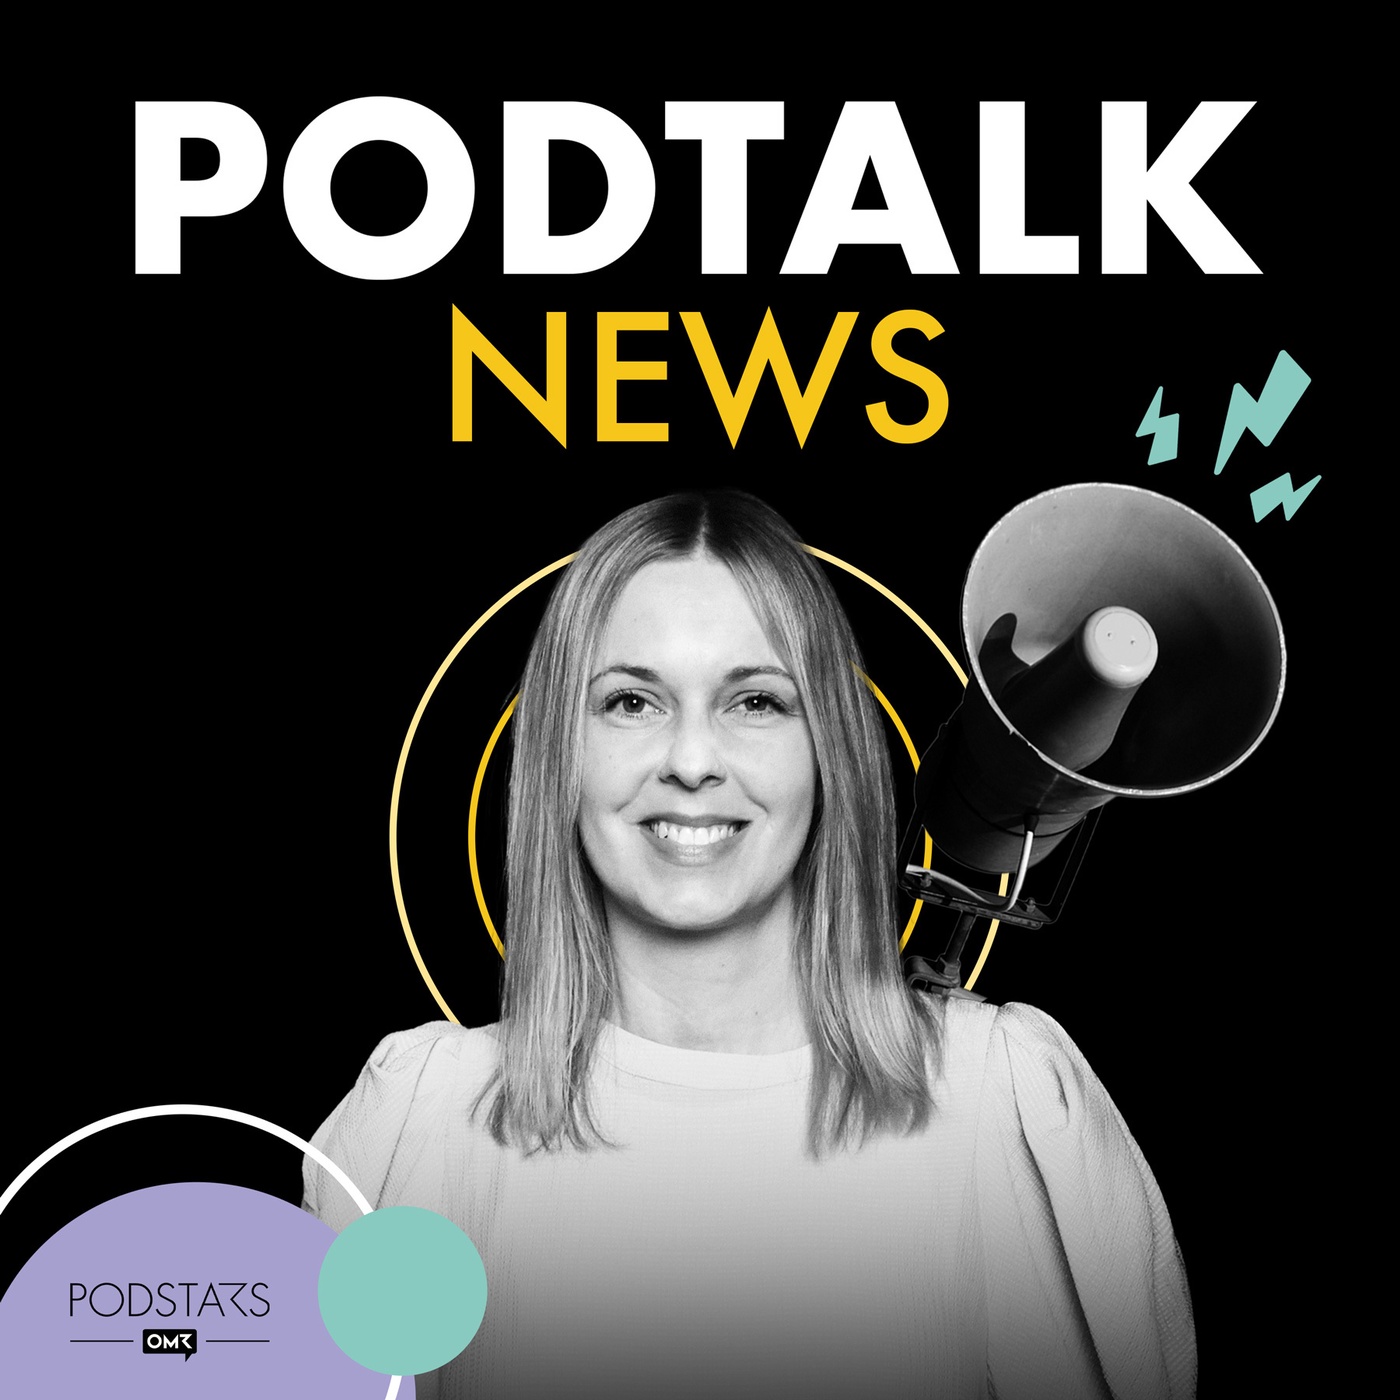 PodTalk News: Reichweiten der Top-Podcasts, Discovery-Relevanz von YouTube und ein KI-Notizen-Tool